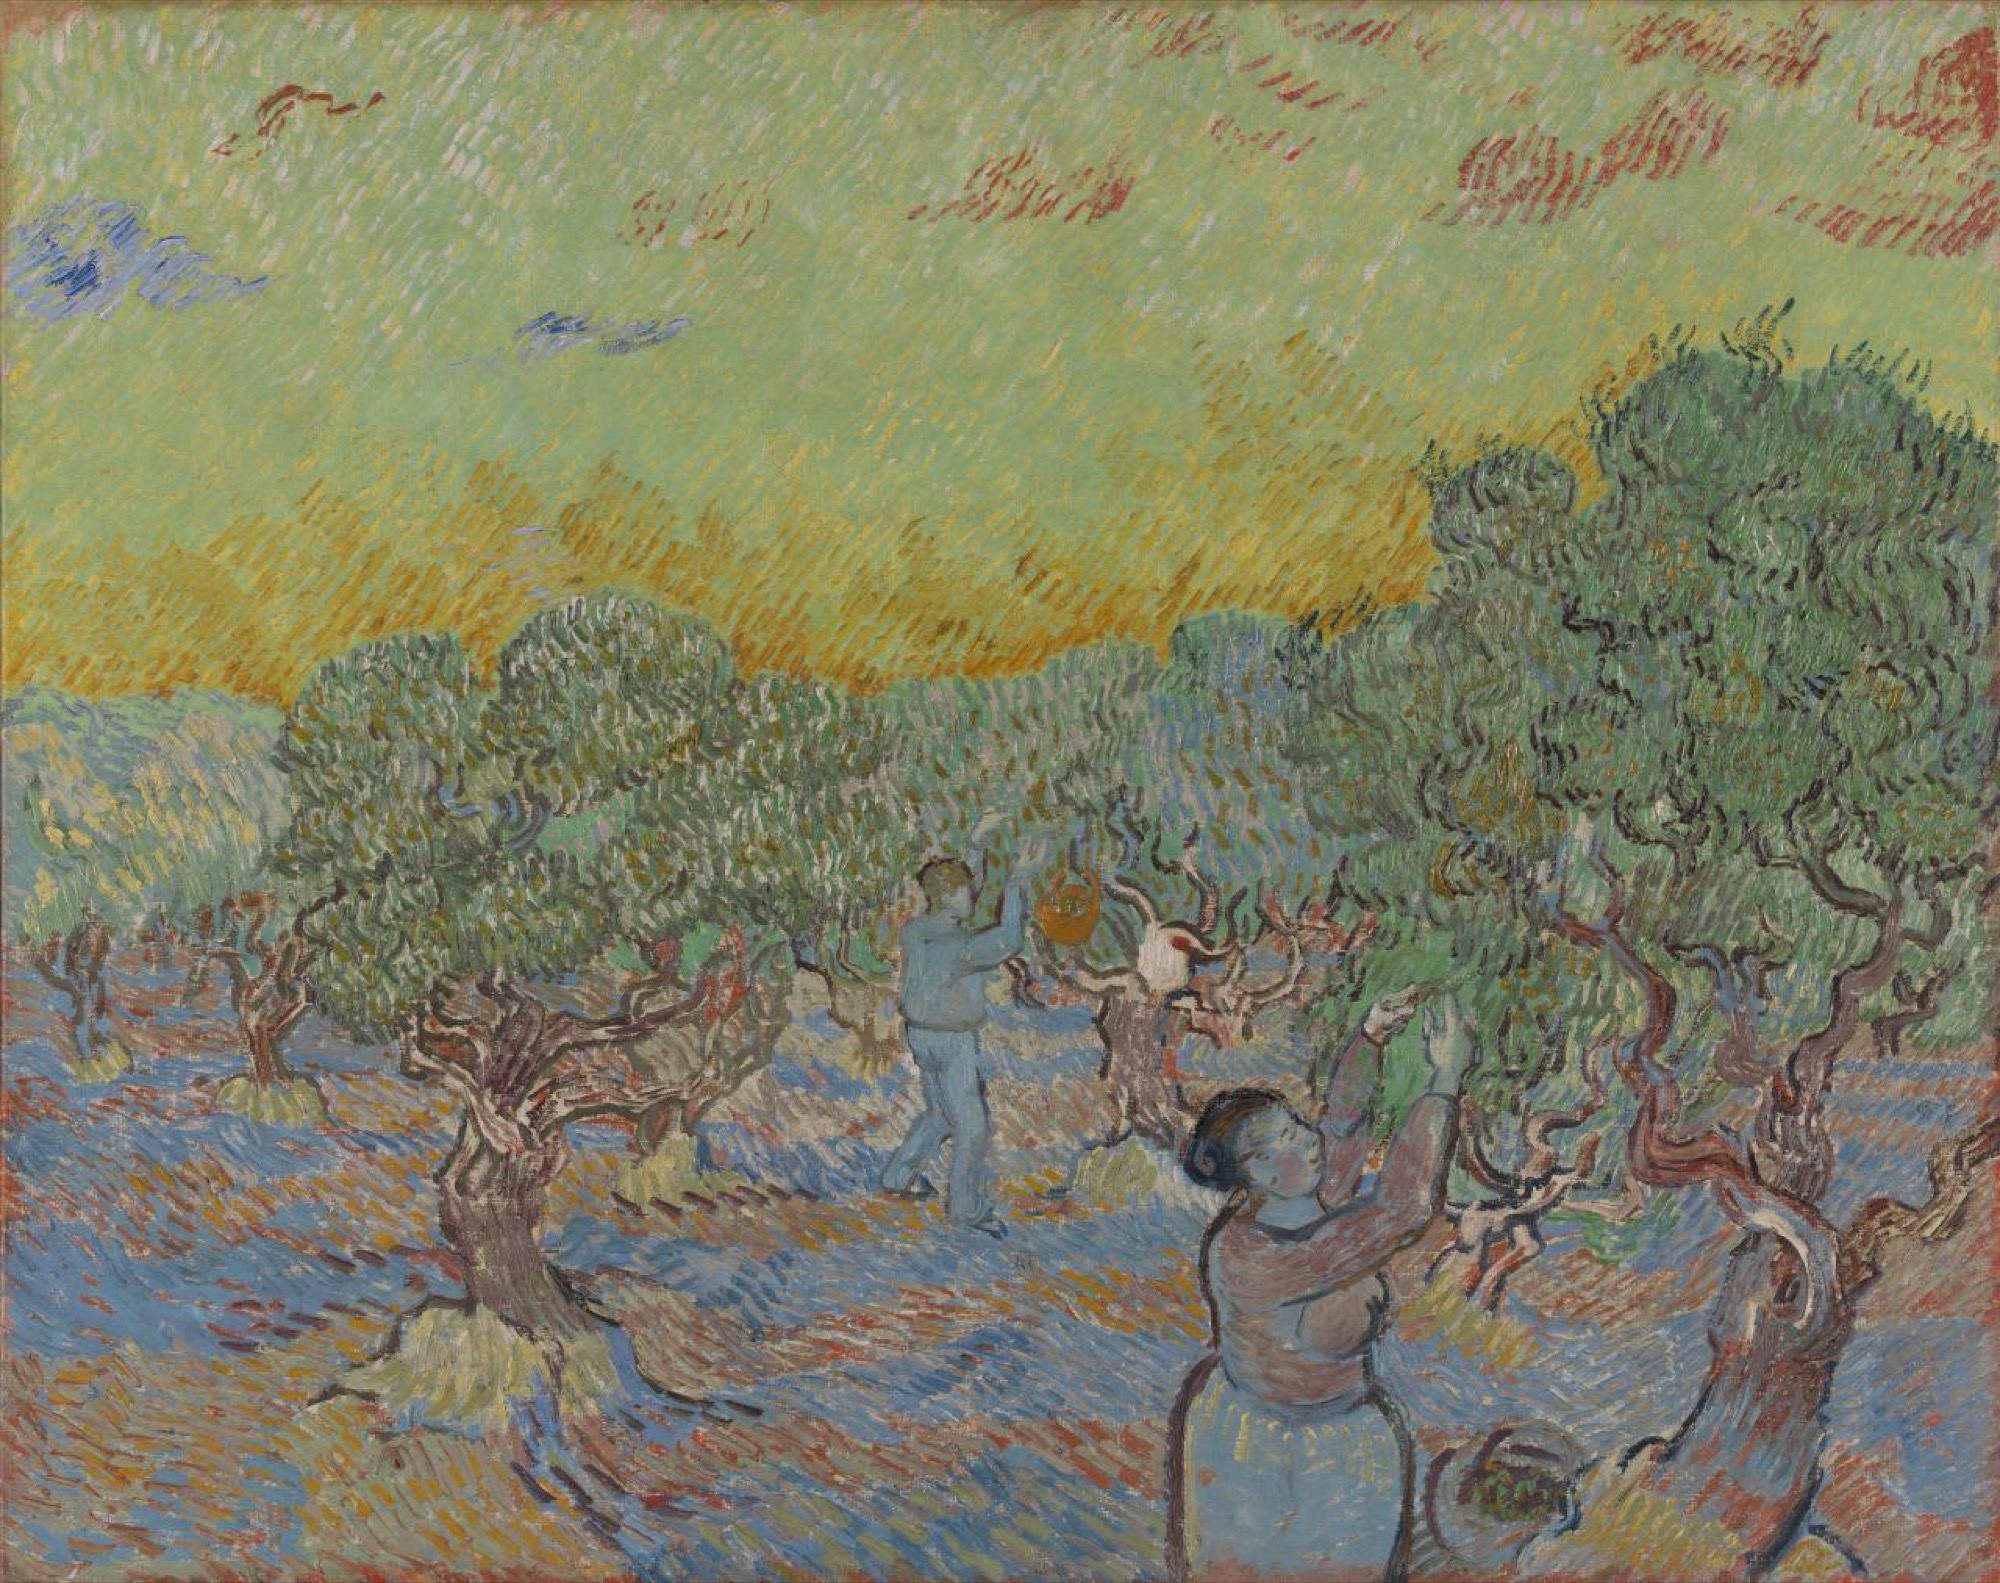 Vincent van Gogh, <em>Olive grove with two olive pickers</em>, December 1889 Saint-Rémy, oil on canvas, 73 x 92 cm. Kröller-Müller Museum, Otterlo © Kröller-Müller Museum